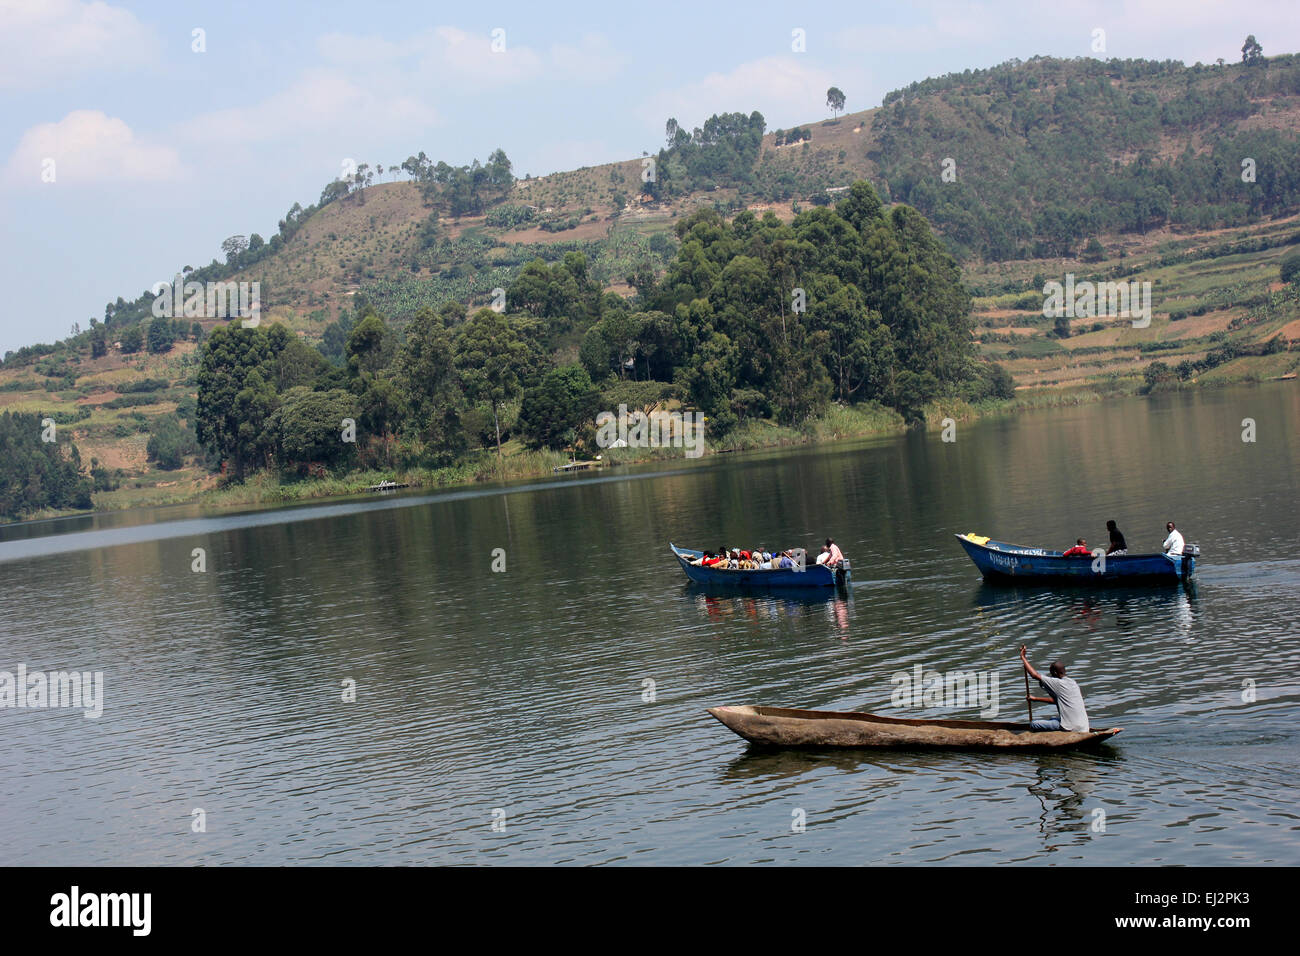 Les passagers de prendre des promenades en bateau sur le lac Bunyonyi dans l'ouest de l'Ouganda Banque D'Images